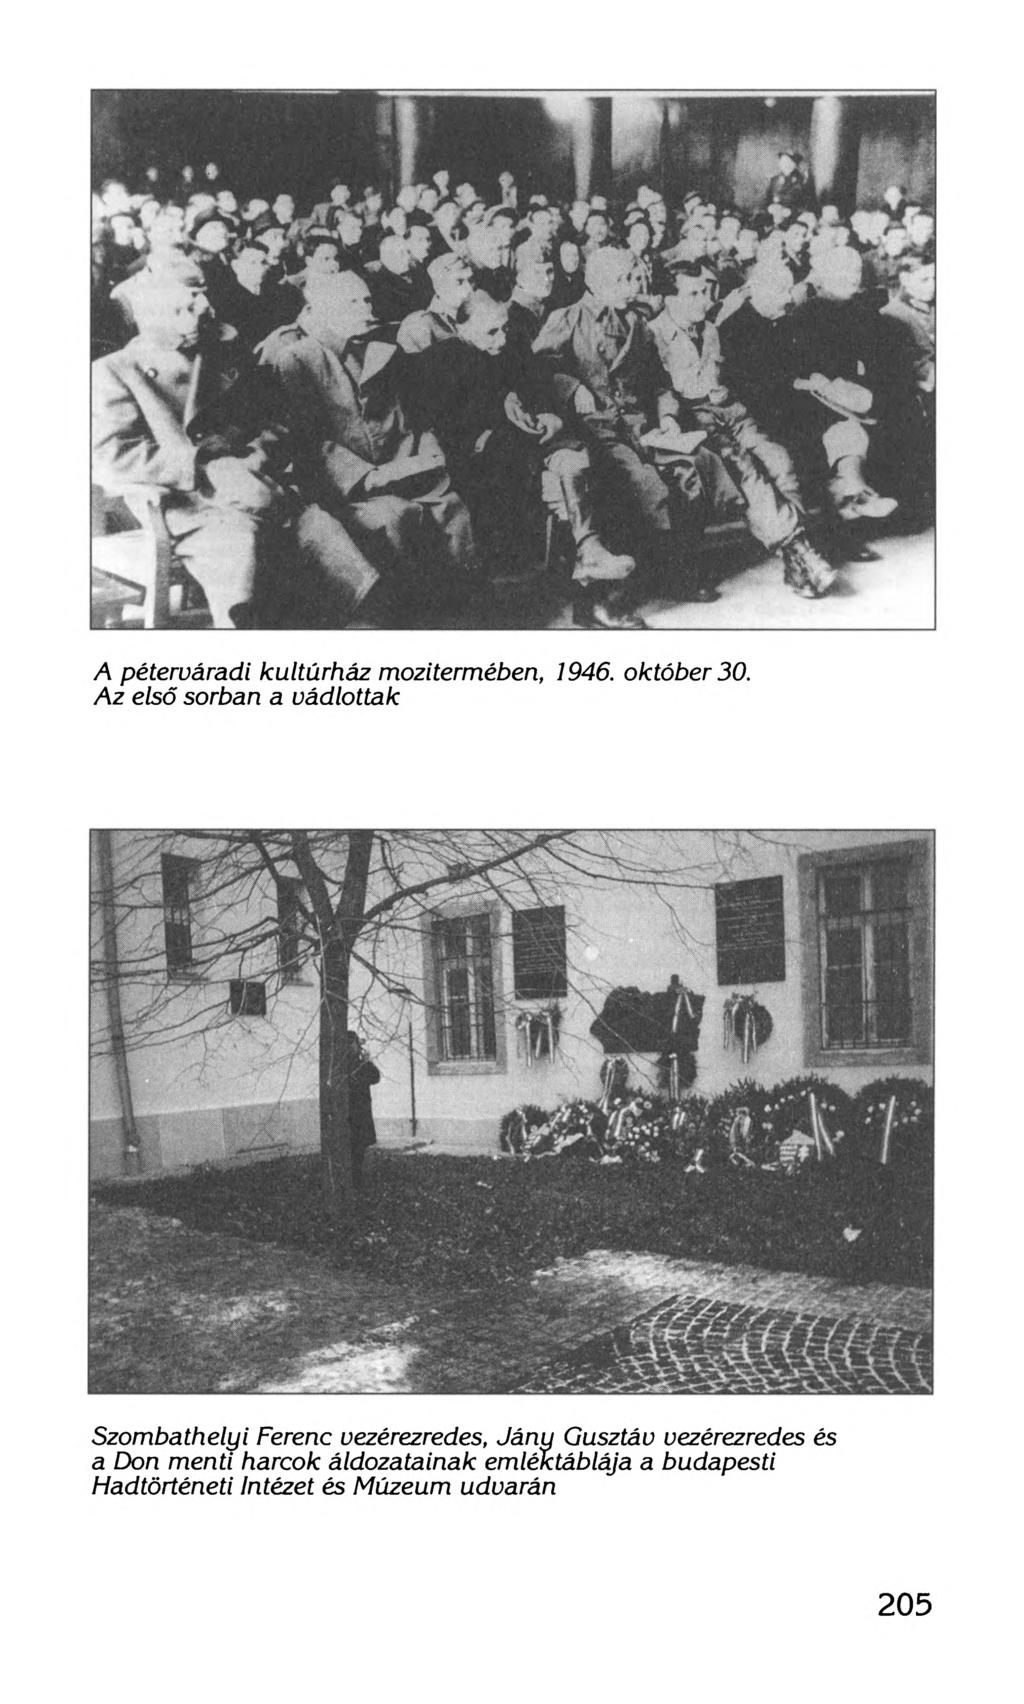 A péteruáradi kultúrház mozitermében, 1946. október 30.